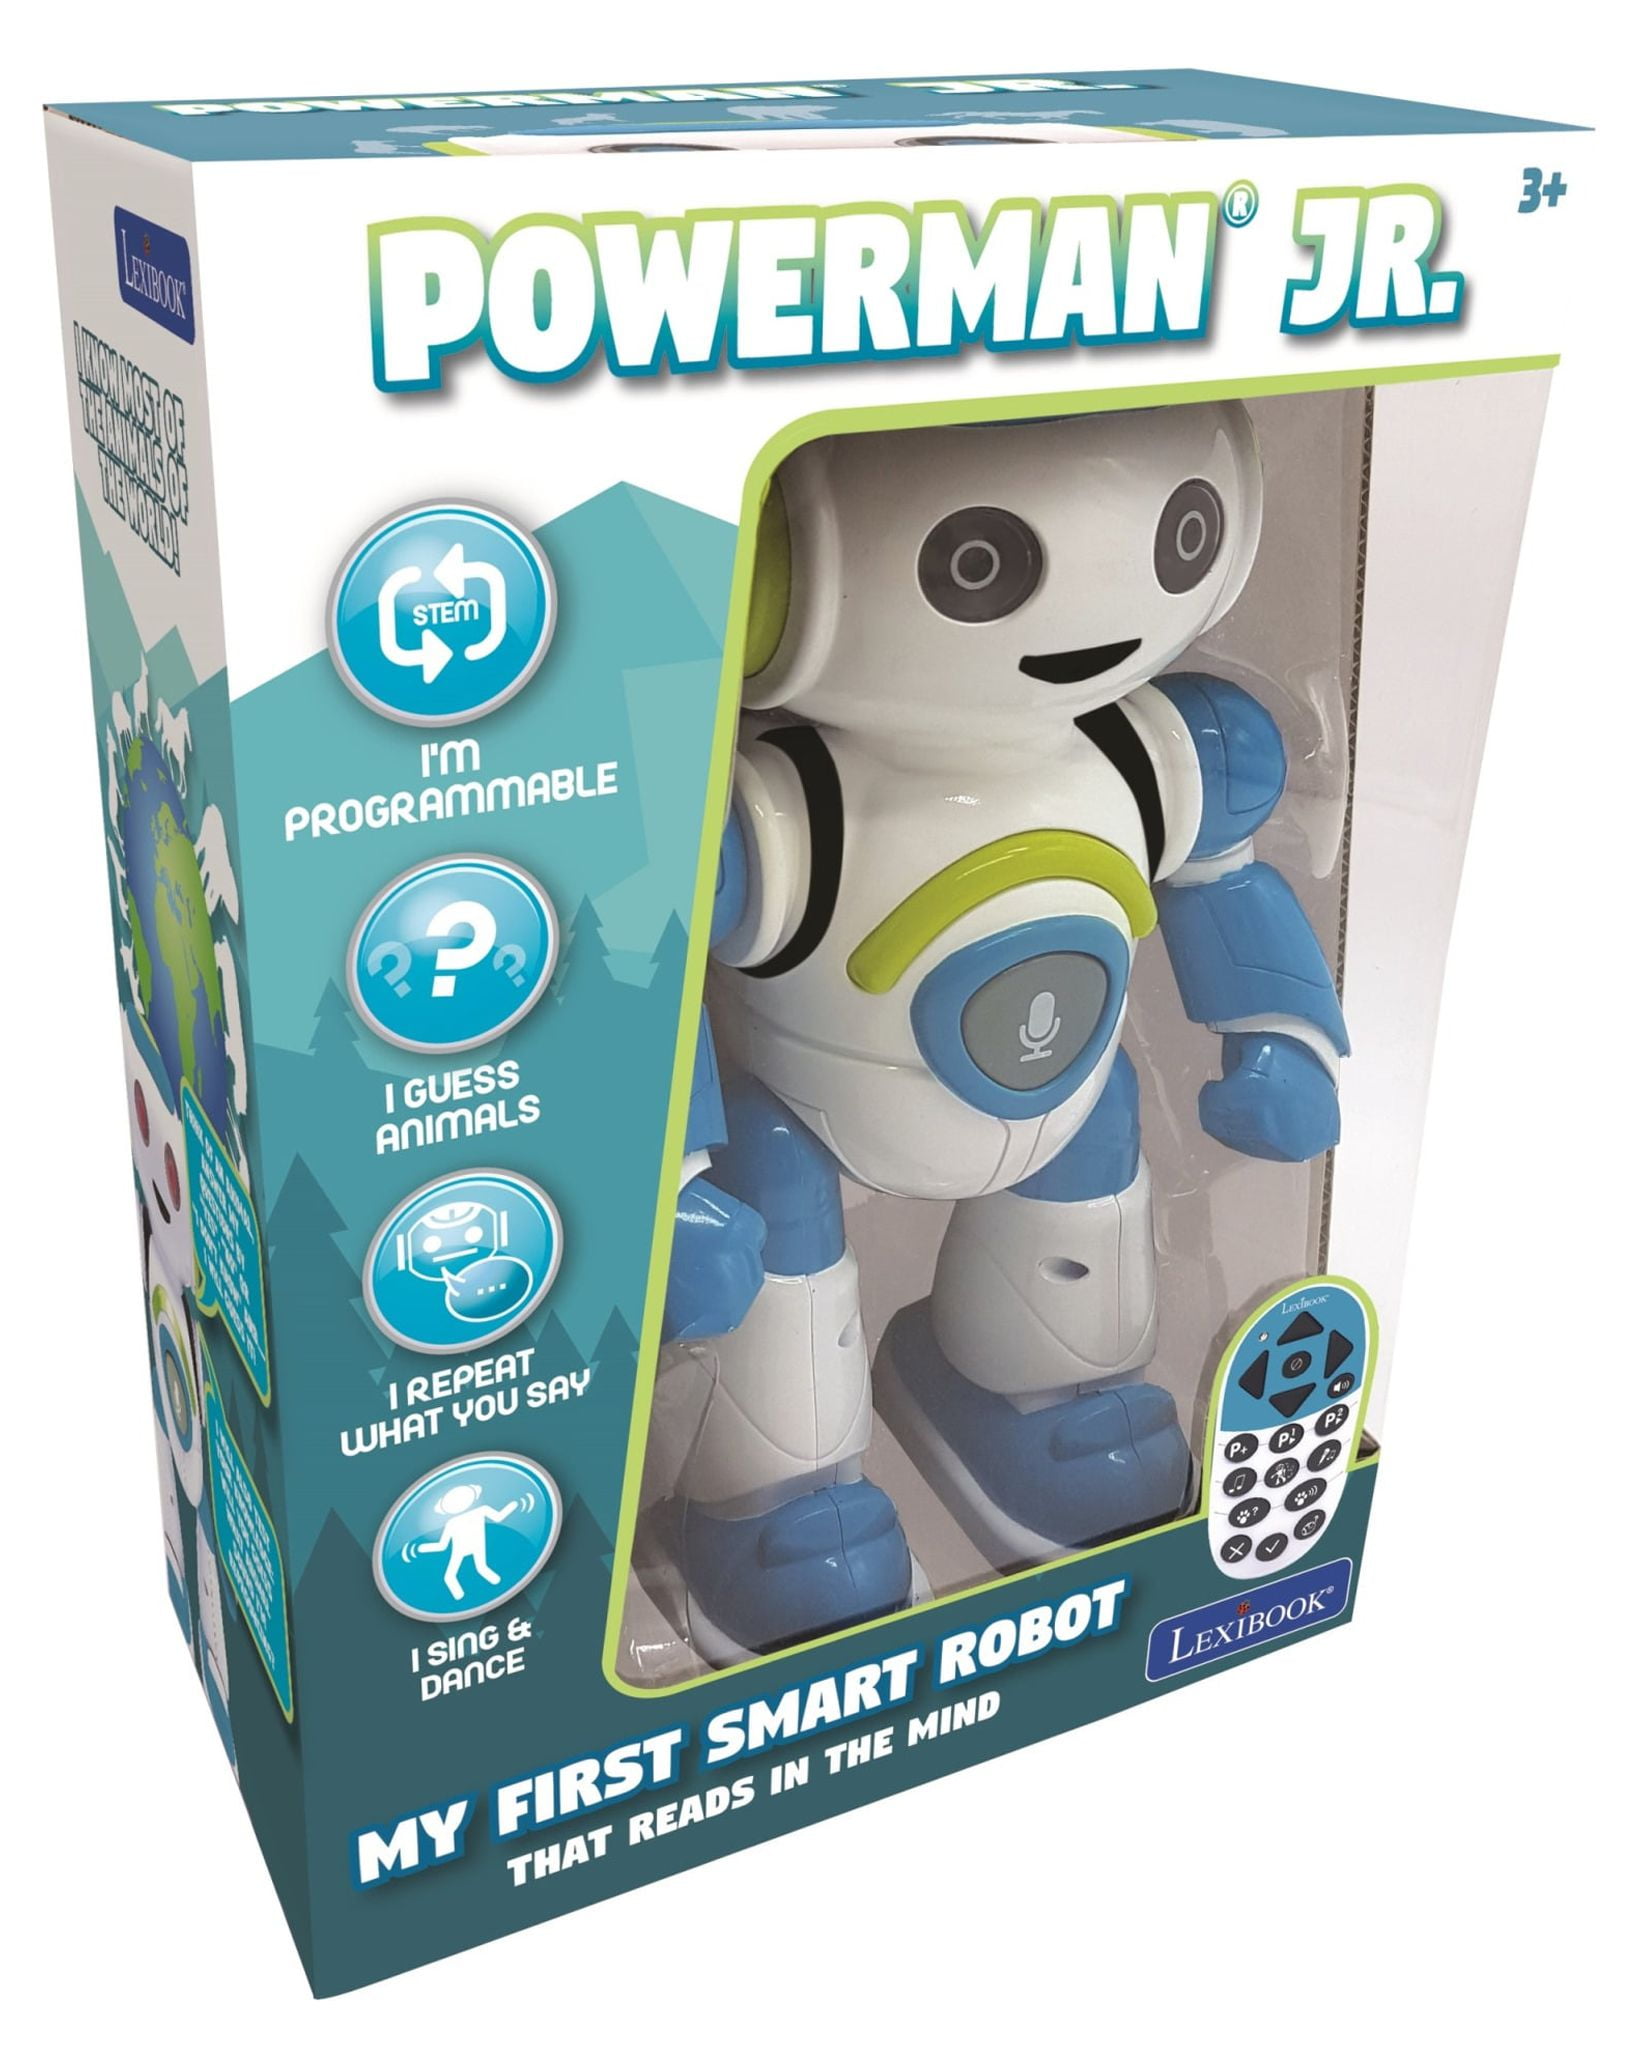 Lexibook POWERMAN® Star Robot - Paw Patrol